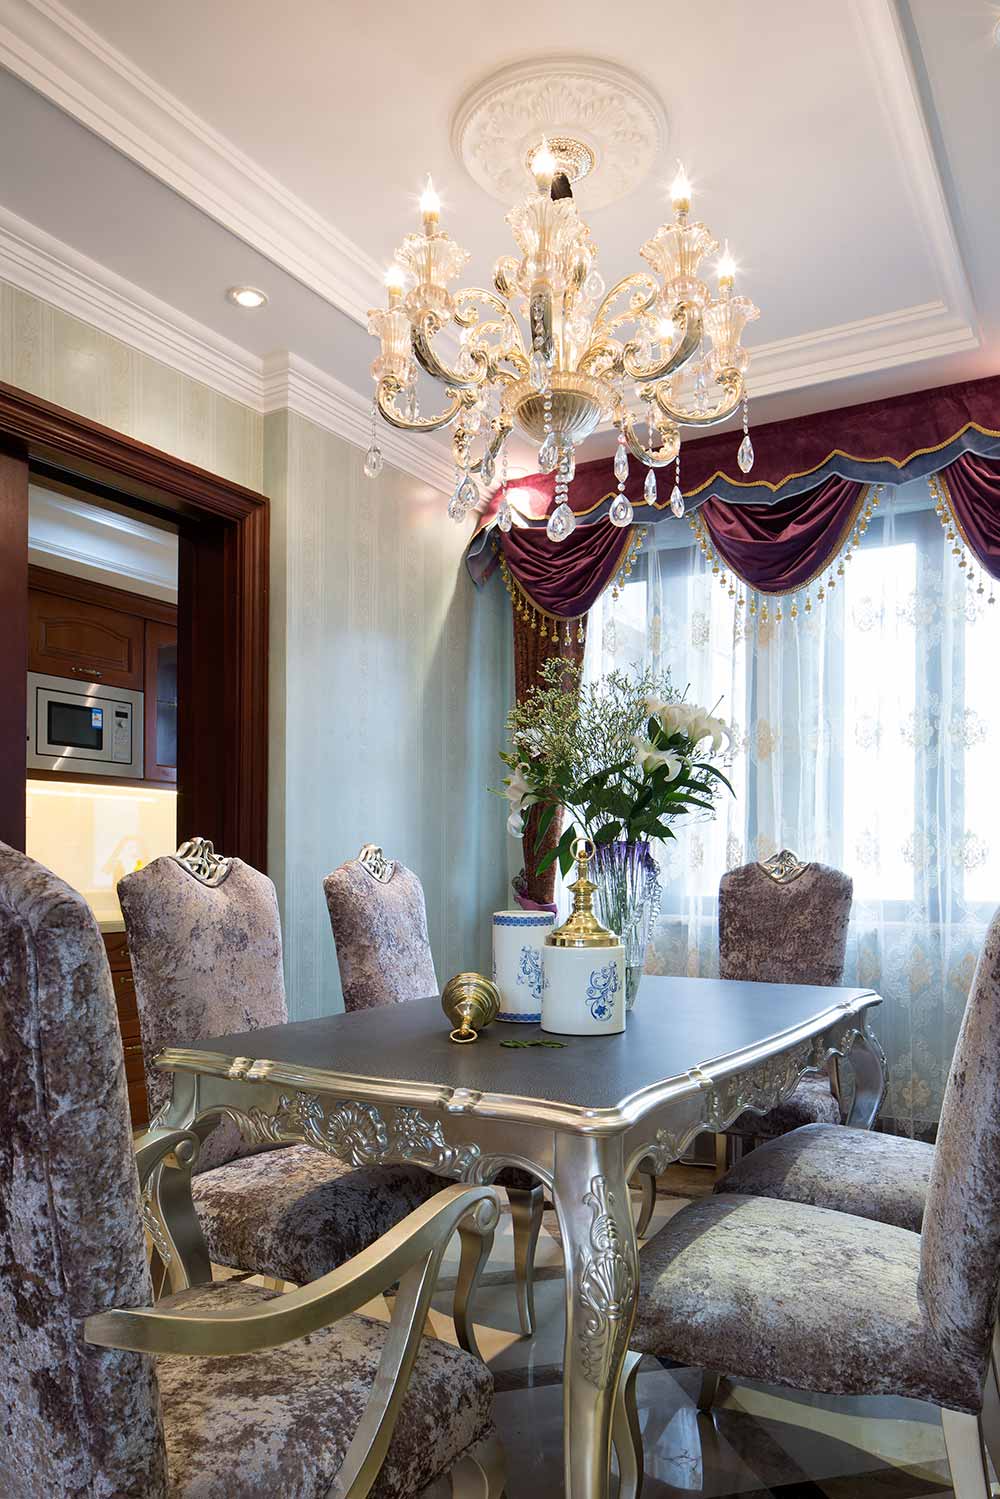 绒布材质为室内带来了踏实而高贵的质感。浪漫的紫色、优雅的灰色共同为餐厅区域围塑了温馨的环境。